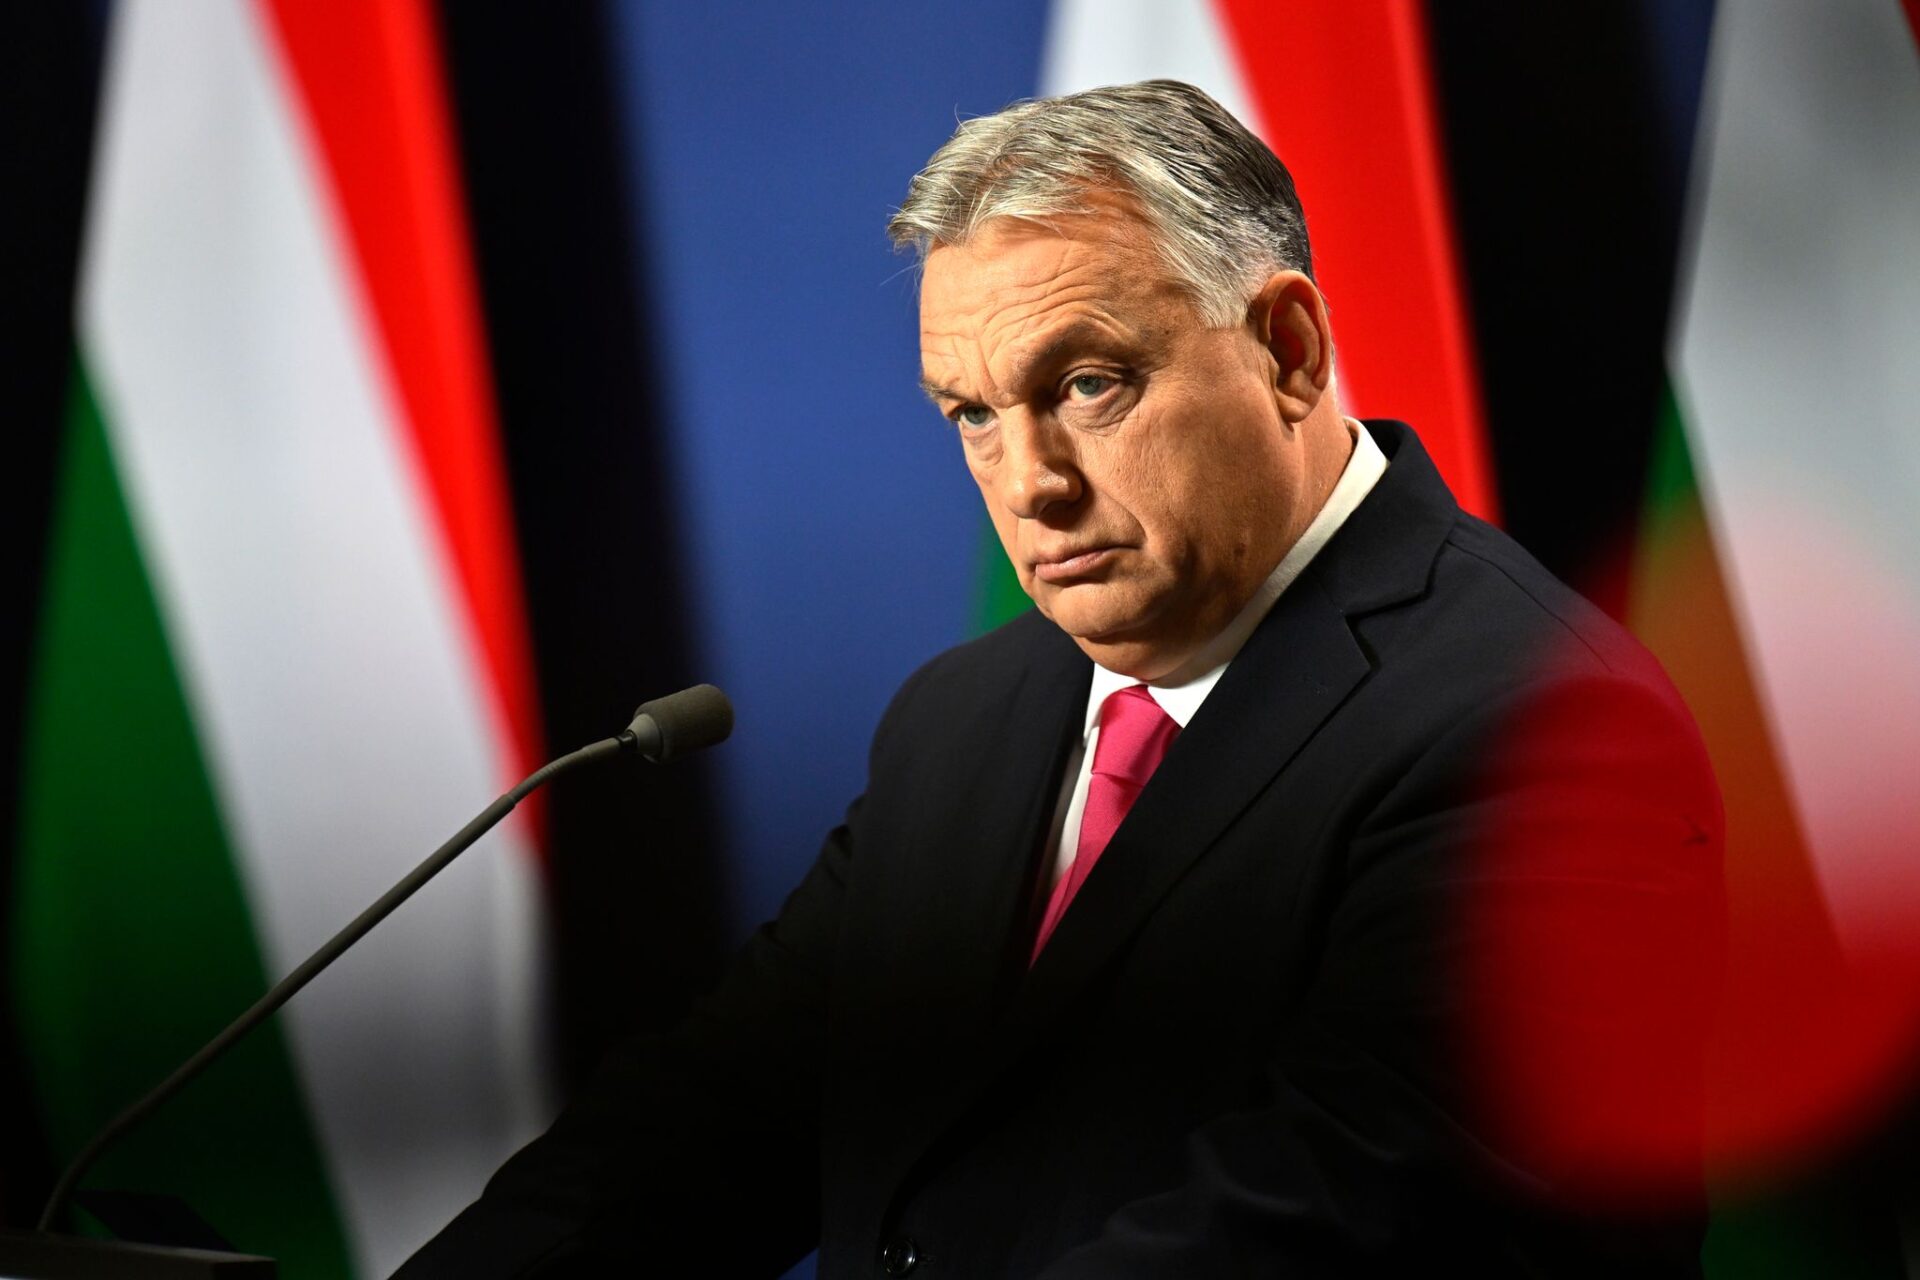 Viktor Orban, Ministerpräsident von Ungarn, während einer internationalen Pressekonferenz. (zu dpa "Drohkulisse für Orban: EU-Beamte malen vor Gipfel düsteres Szenario")